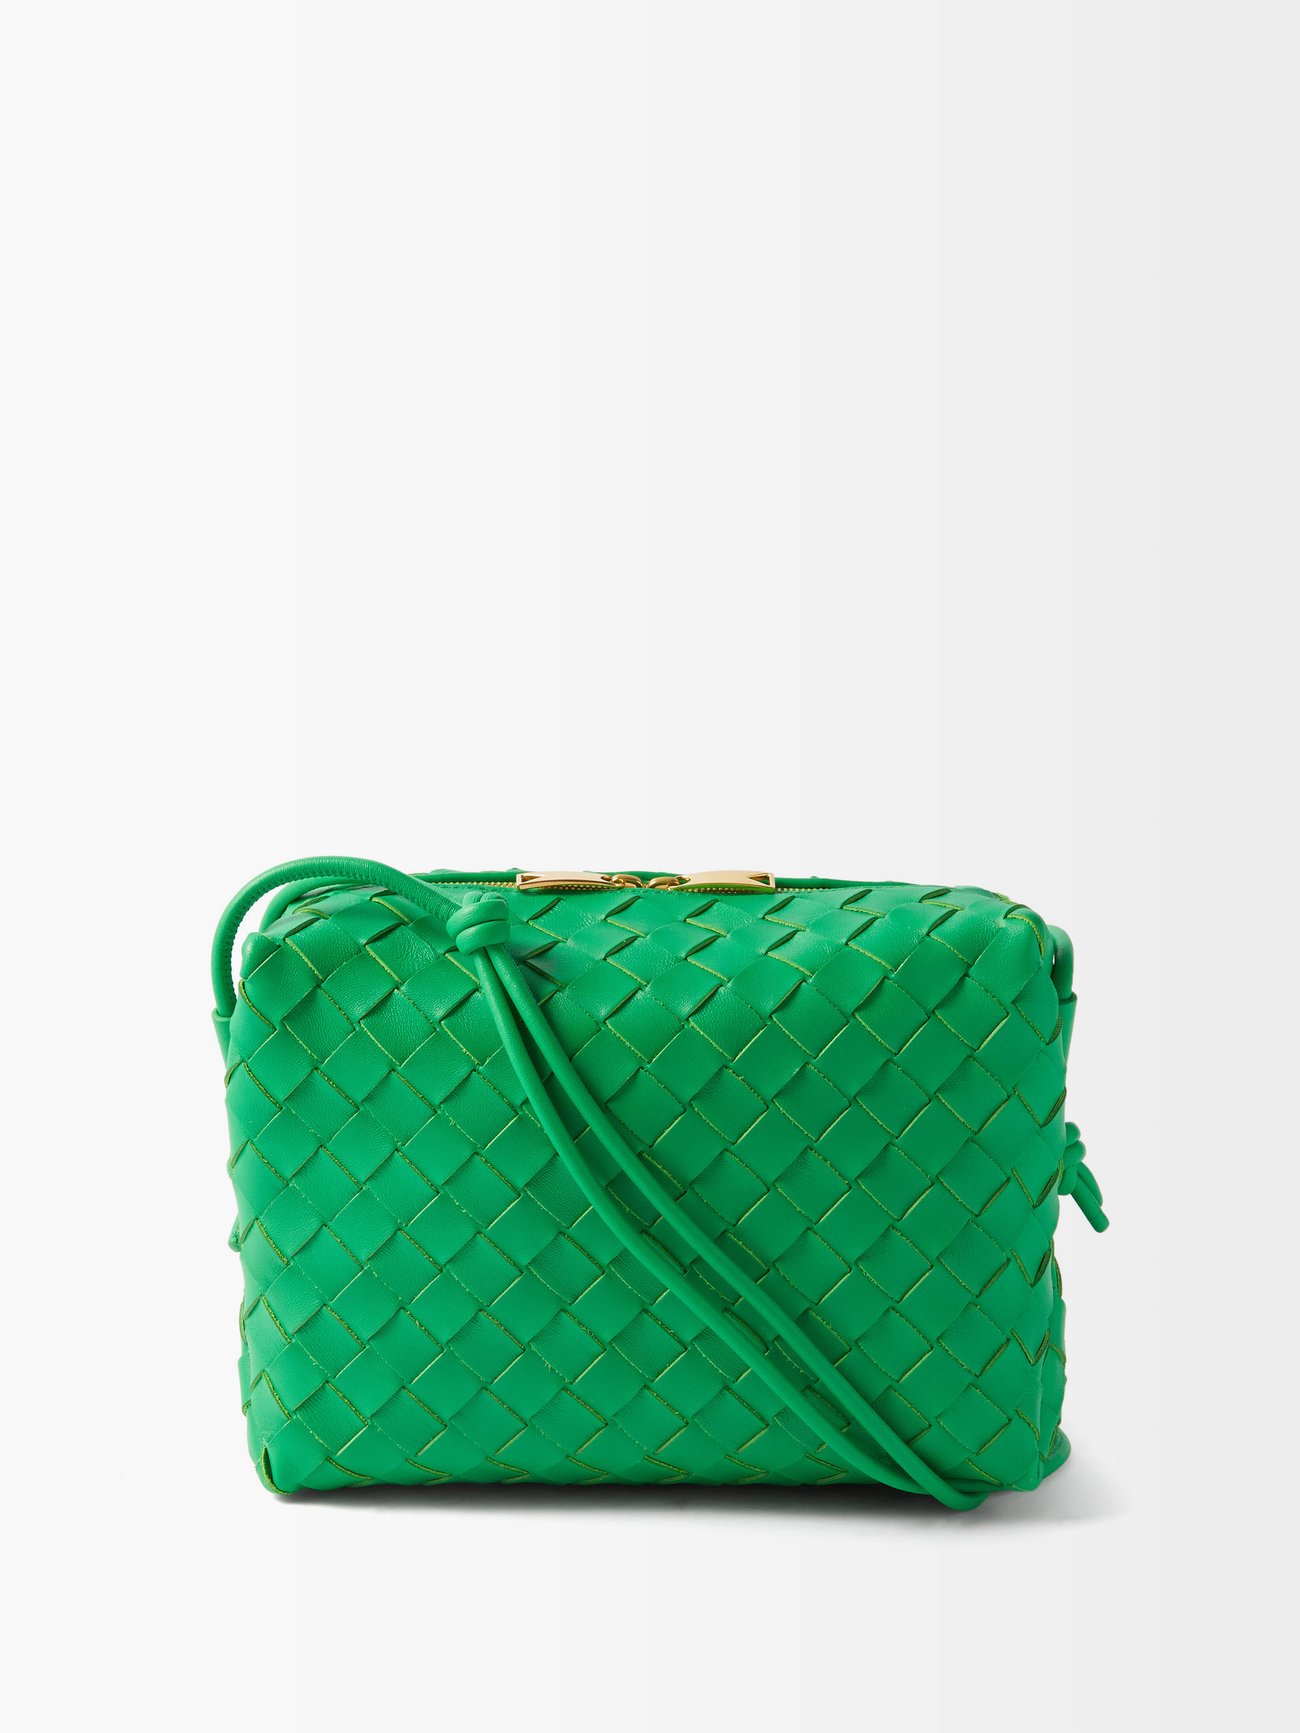 Bottega Veneta Women's Loop Leather Camera Bag - Green - Shoulder Bags